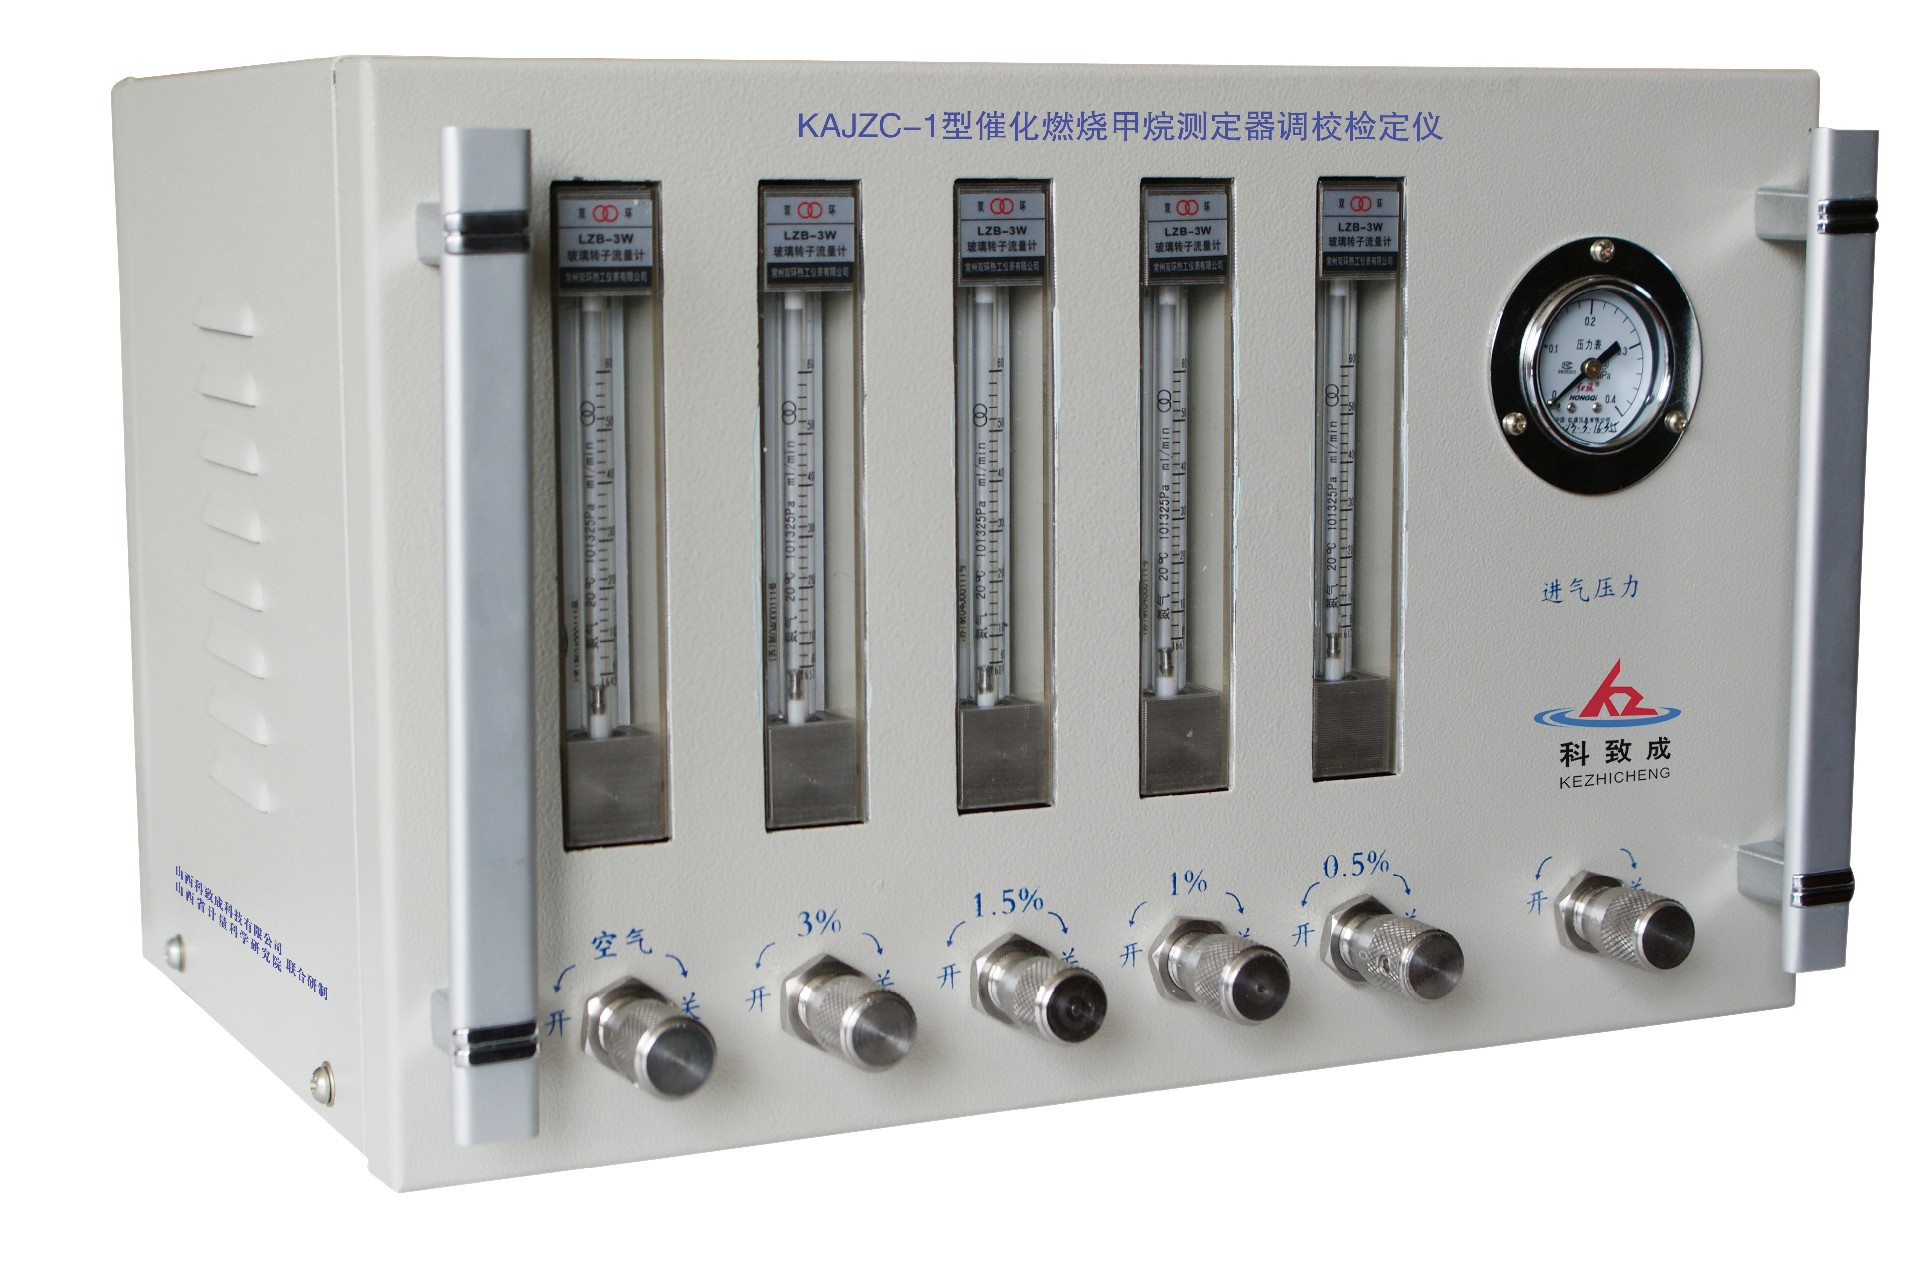 莱芜KAJZC-1型催化燃烧甲烷测定器调校检定仪